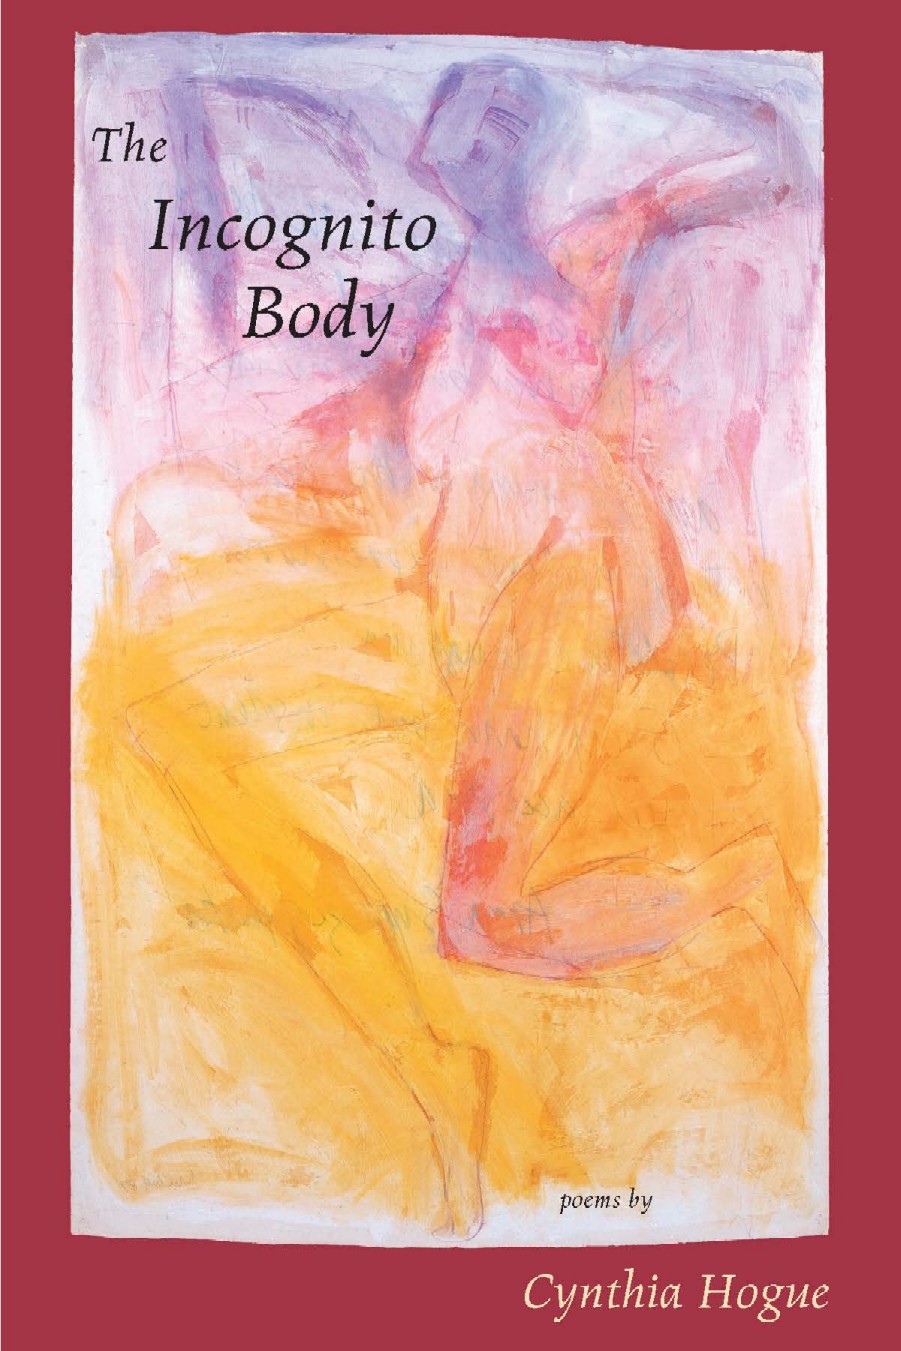 The Incognito Body, Red Hen Press 2006